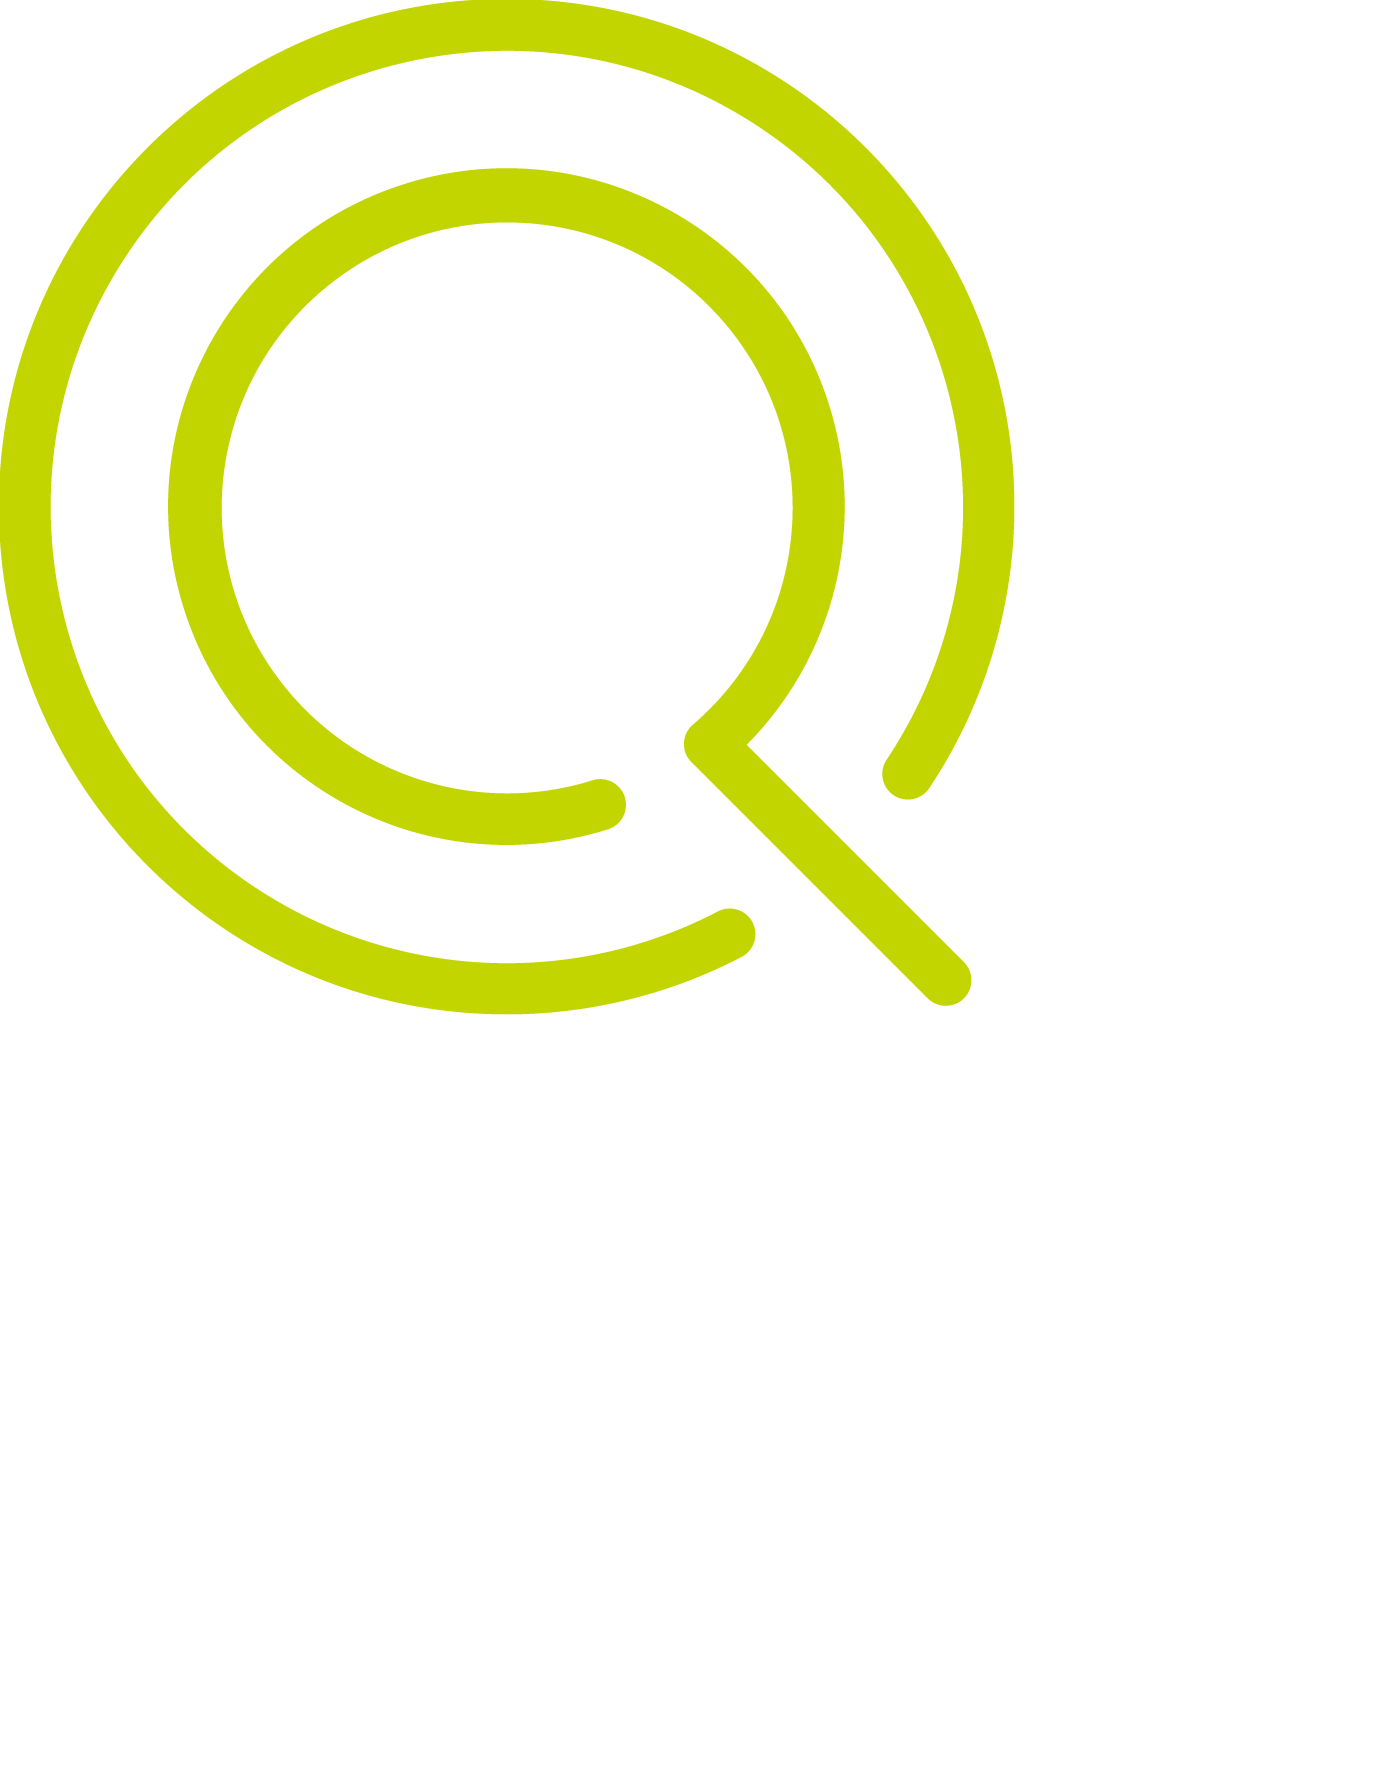 Quorum Park